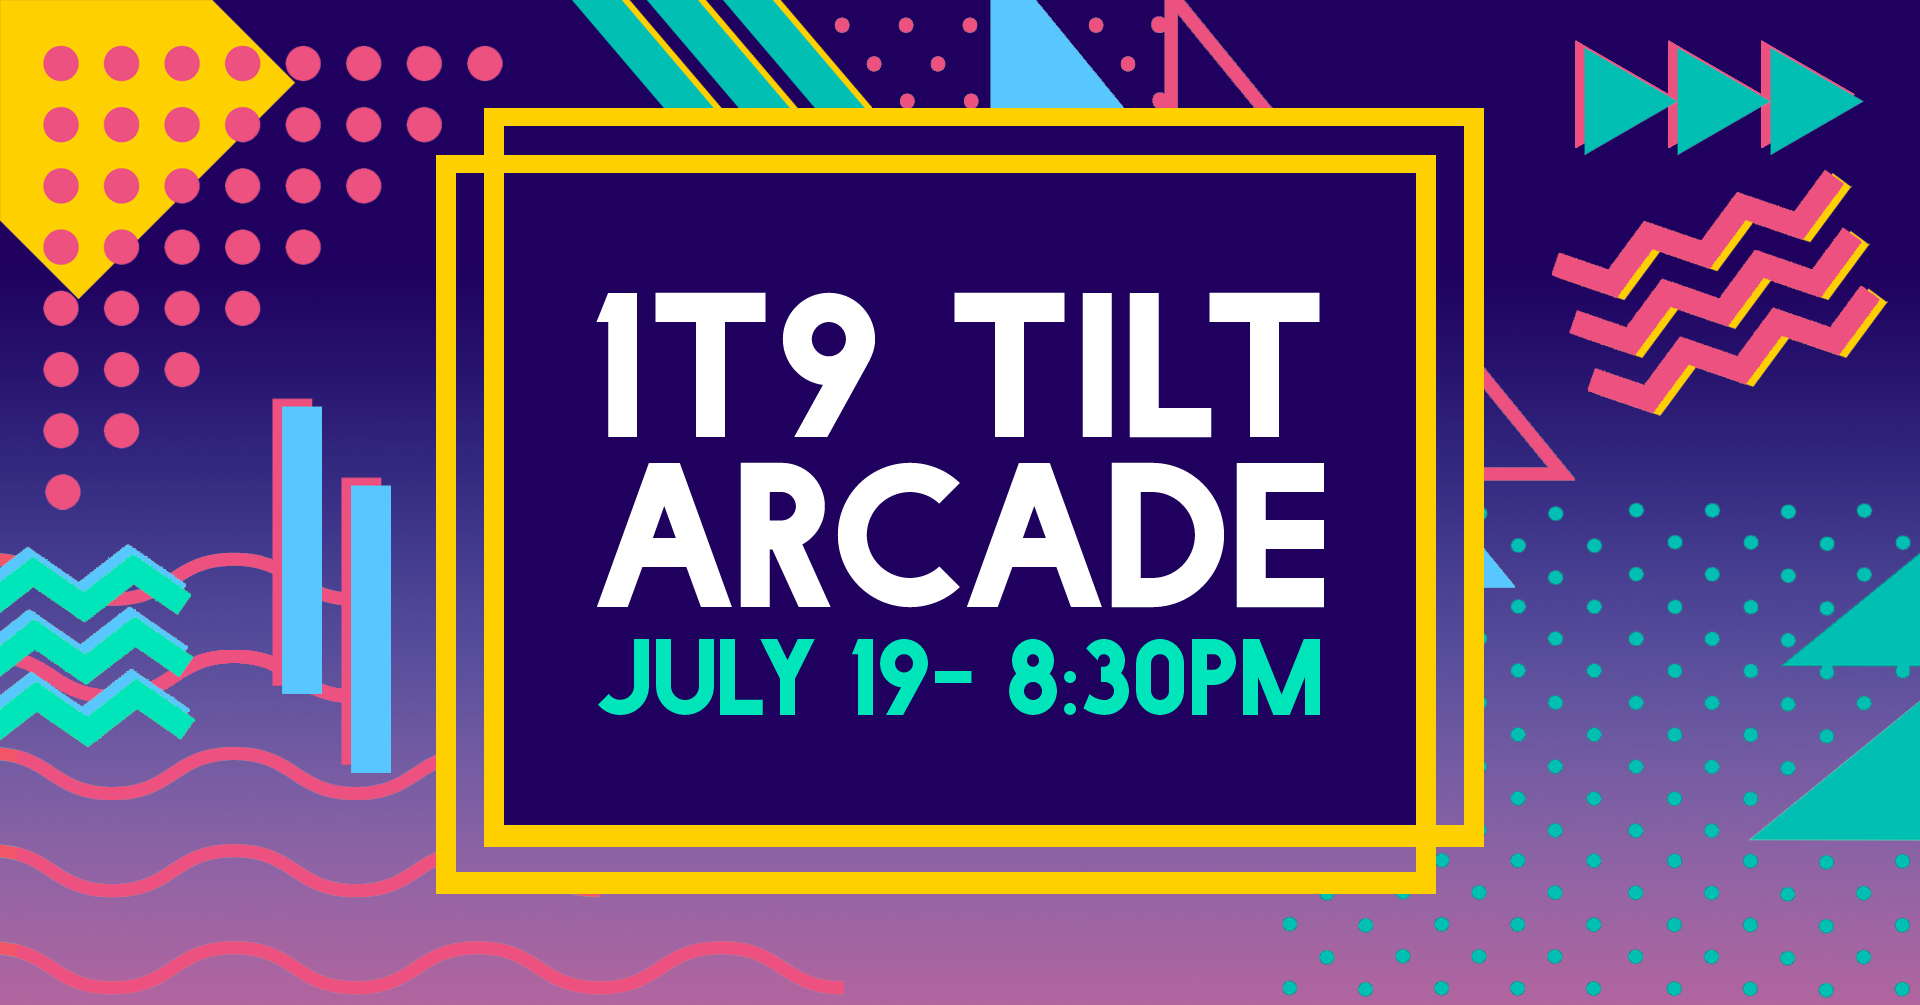 01 Tilt Arcade with the 1T9s